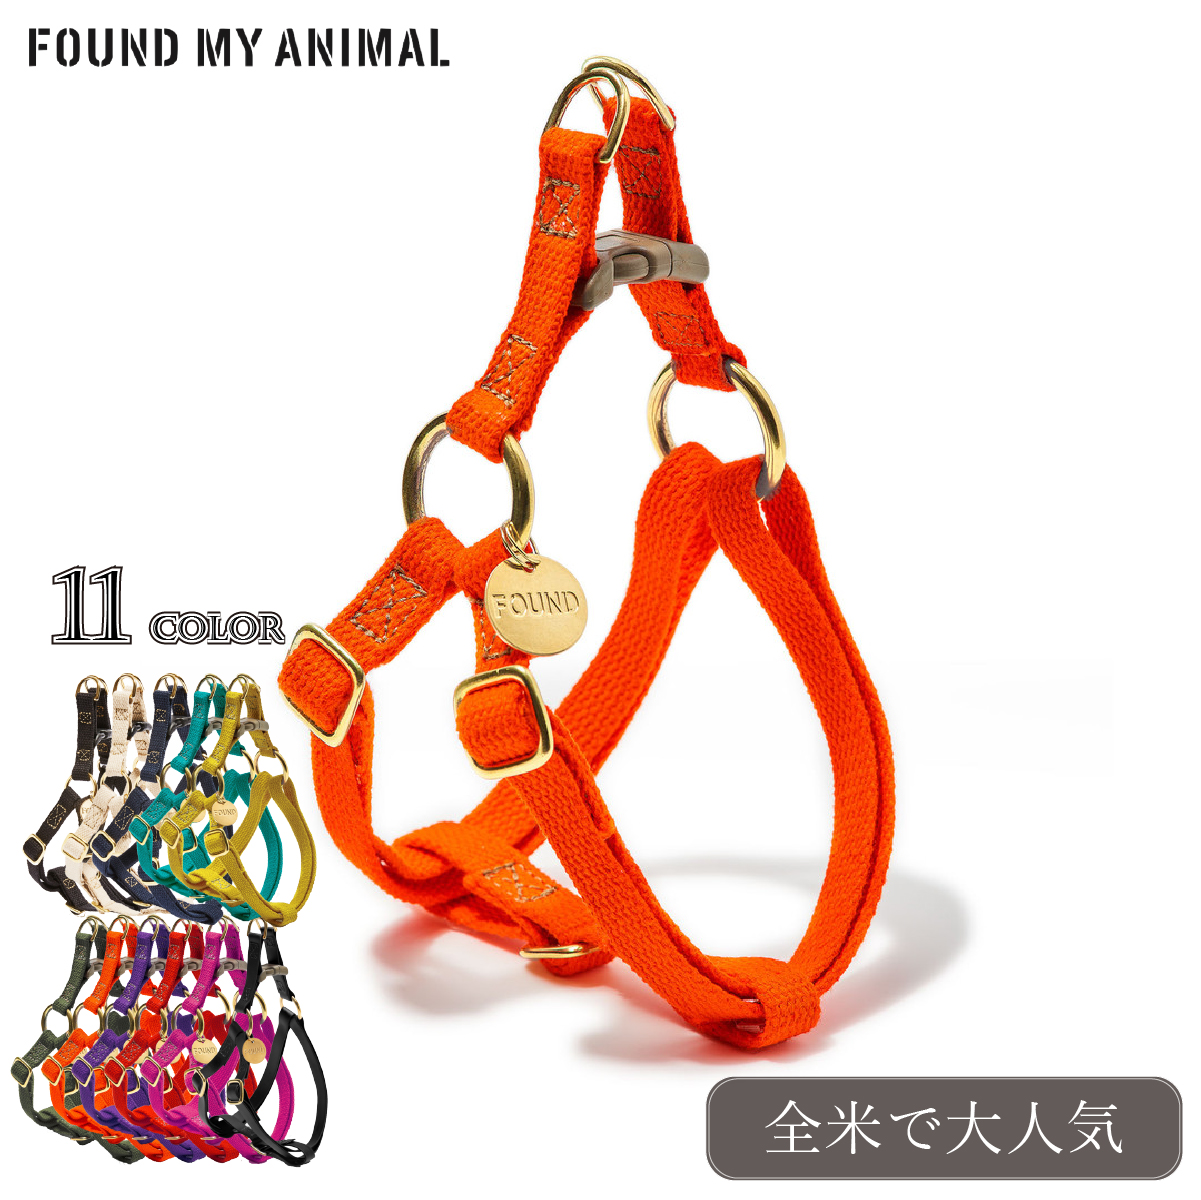 かわいいデザインの3Dハーネス 全米で大人気 FOUND MY ANIMAL ファウンドマイアニマル 限定特価 3Dハーネス 全11色 リード Harness 犬用 非常に高い品質